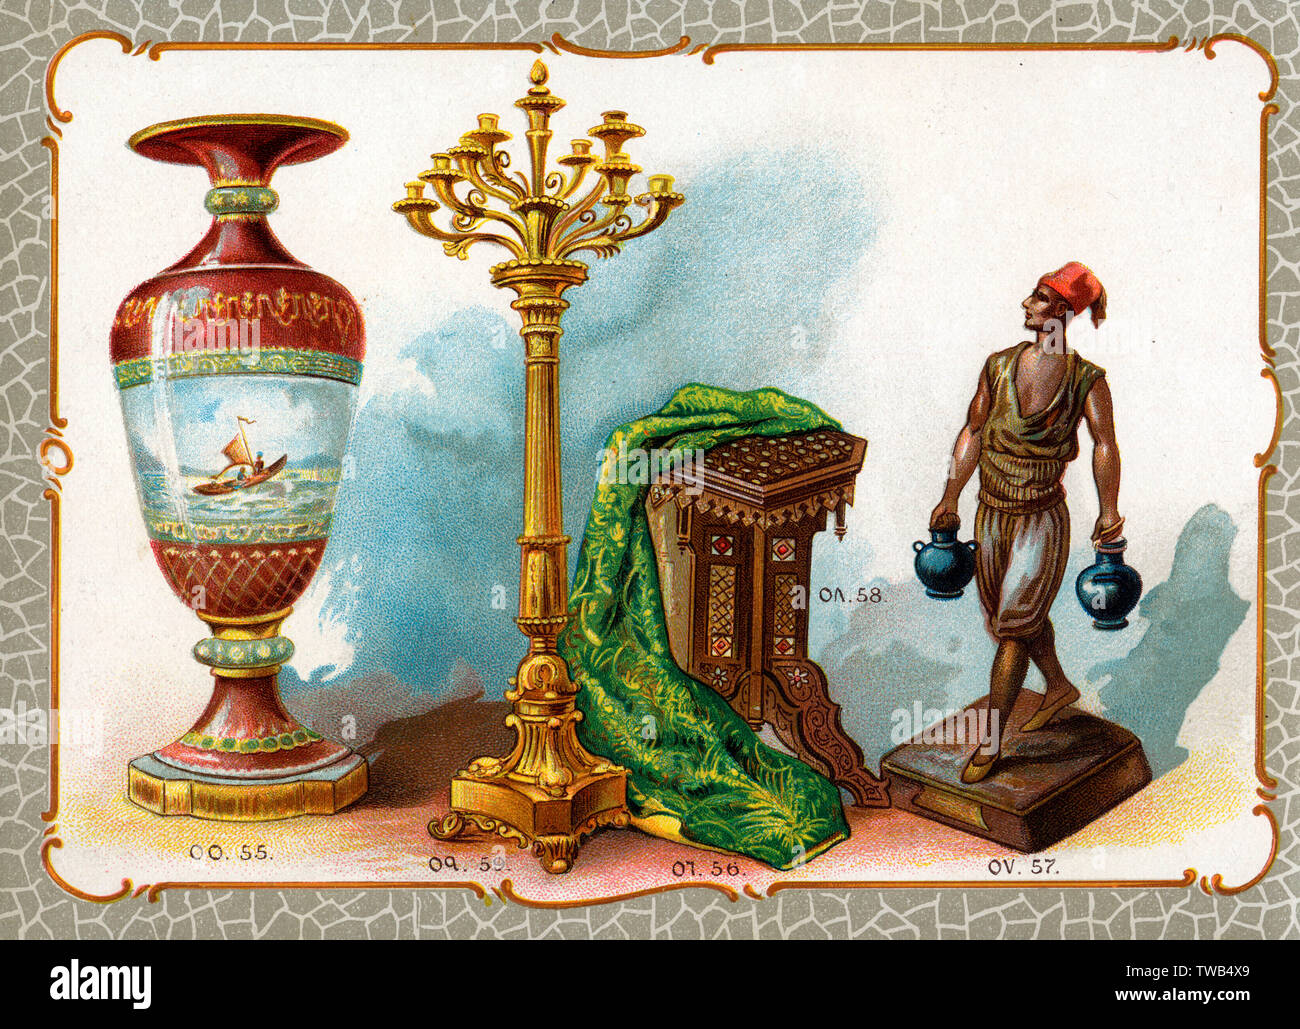 Illustration du catalogue, vase, broderie, statue, etc Banque D'Images